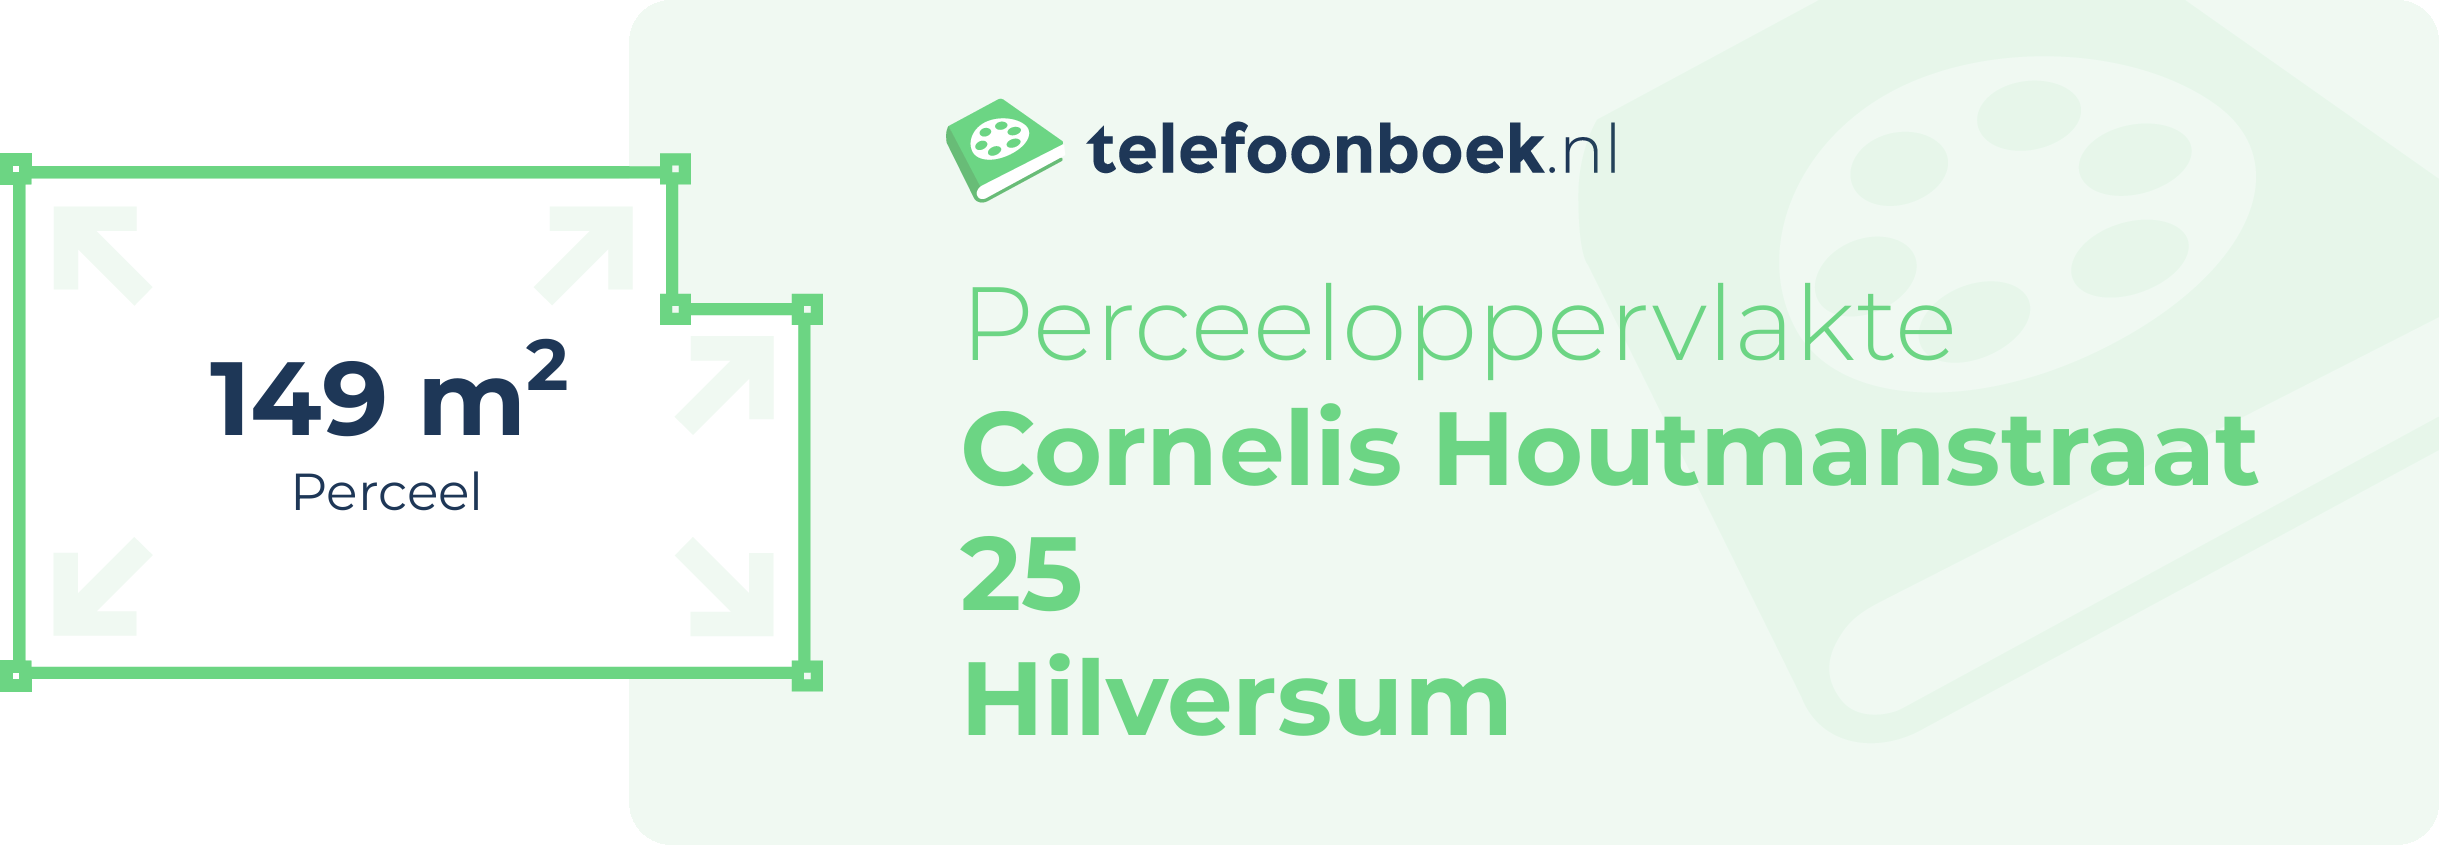 Perceeloppervlakte Cornelis Houtmanstraat 25 Hilversum